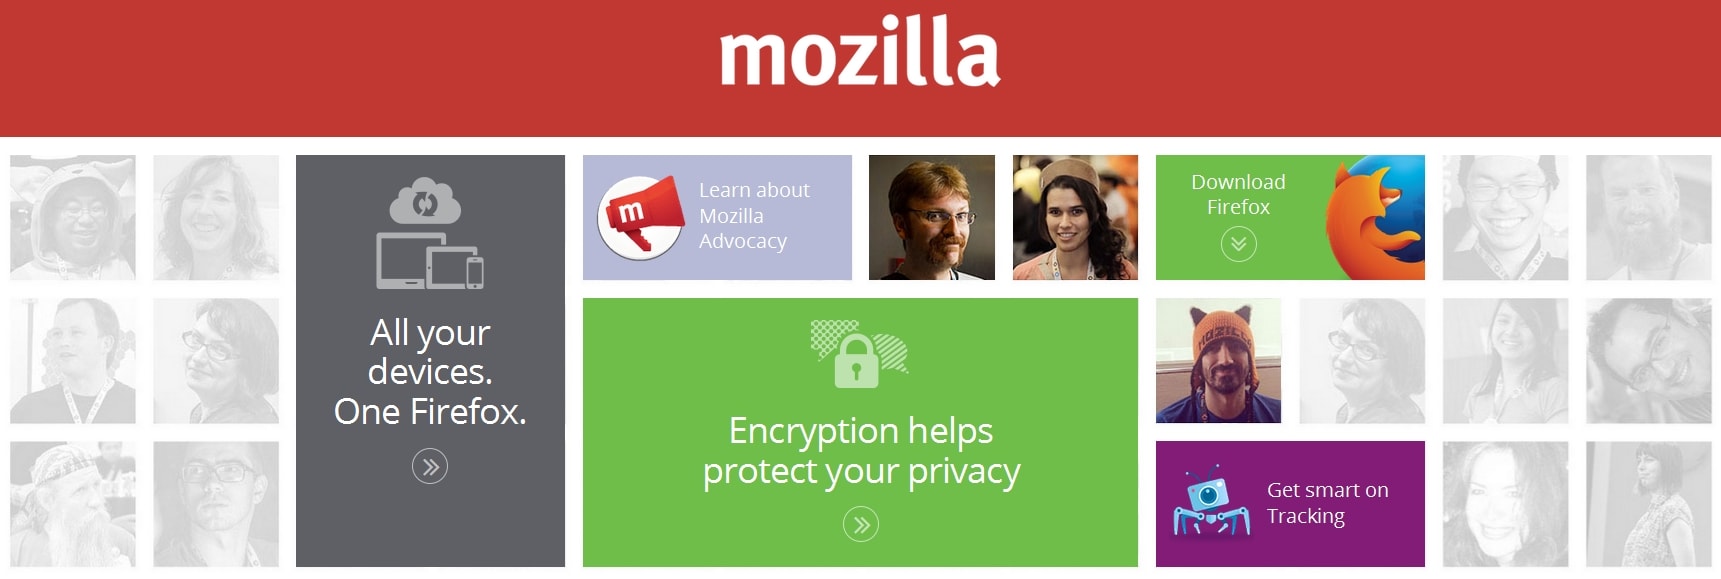 Mozilla Community Design